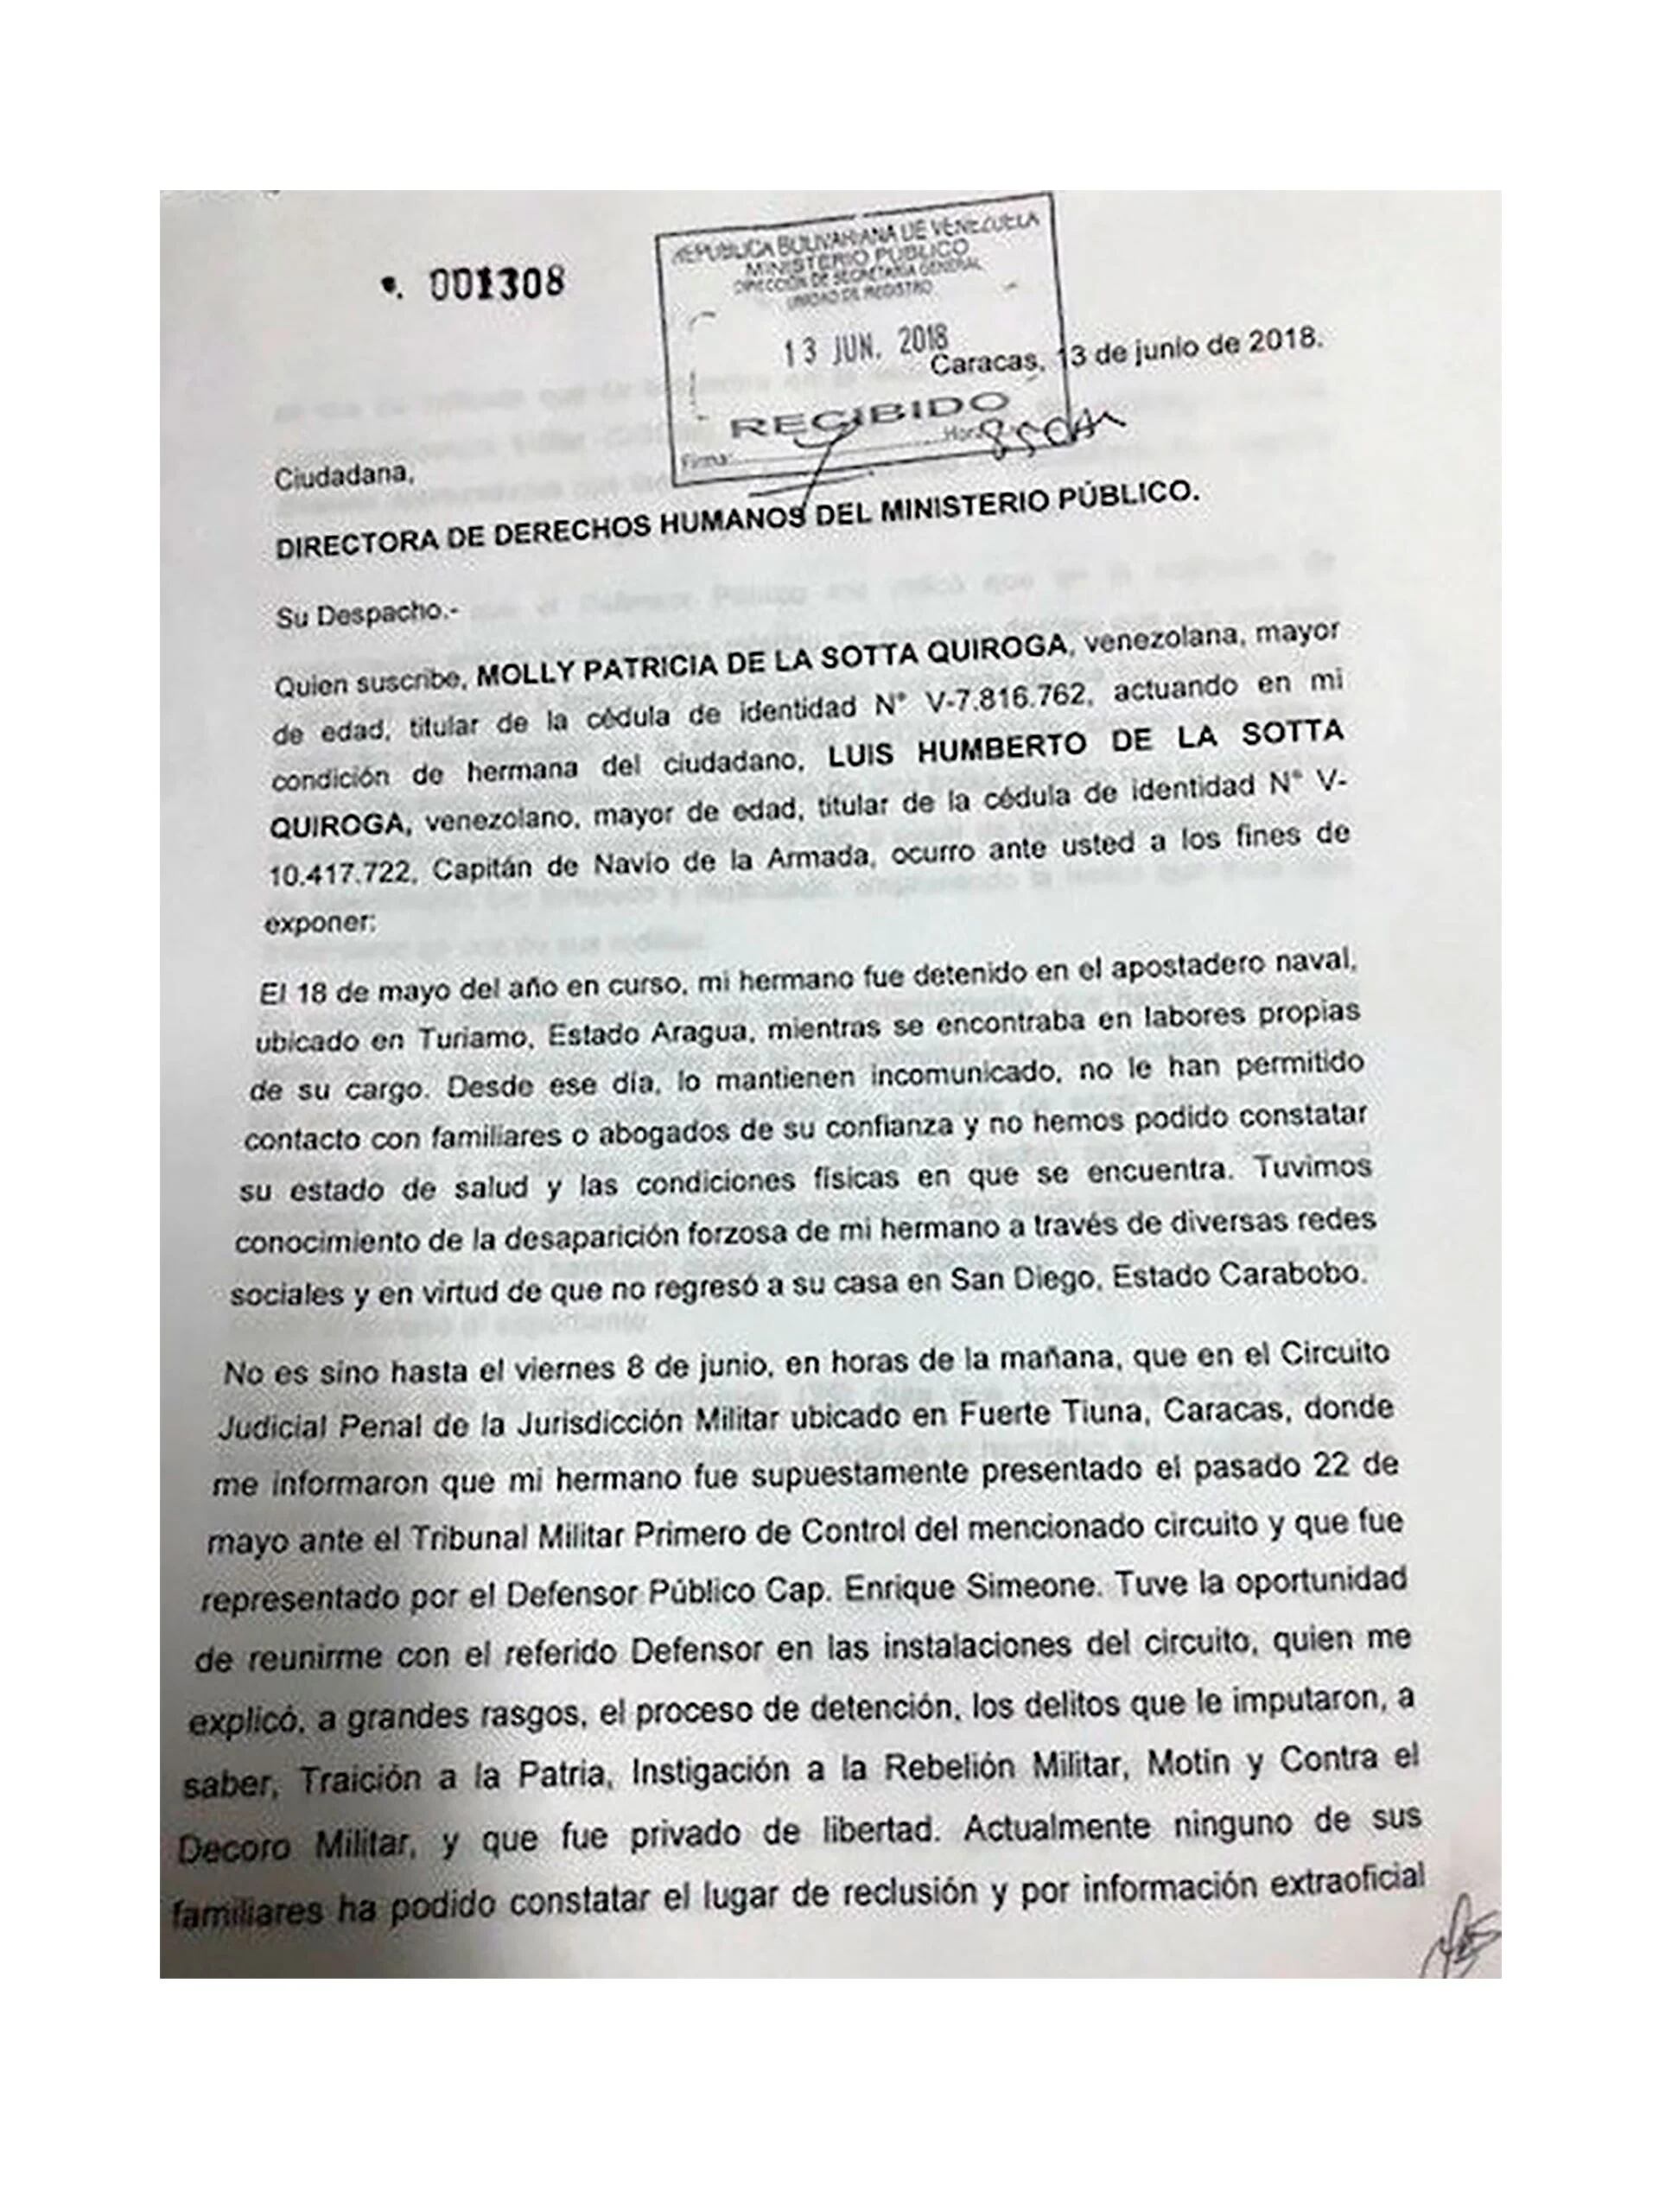 El caso de De La Sotta ha sido denunciado en muchas instancias nacioanles e internacionales